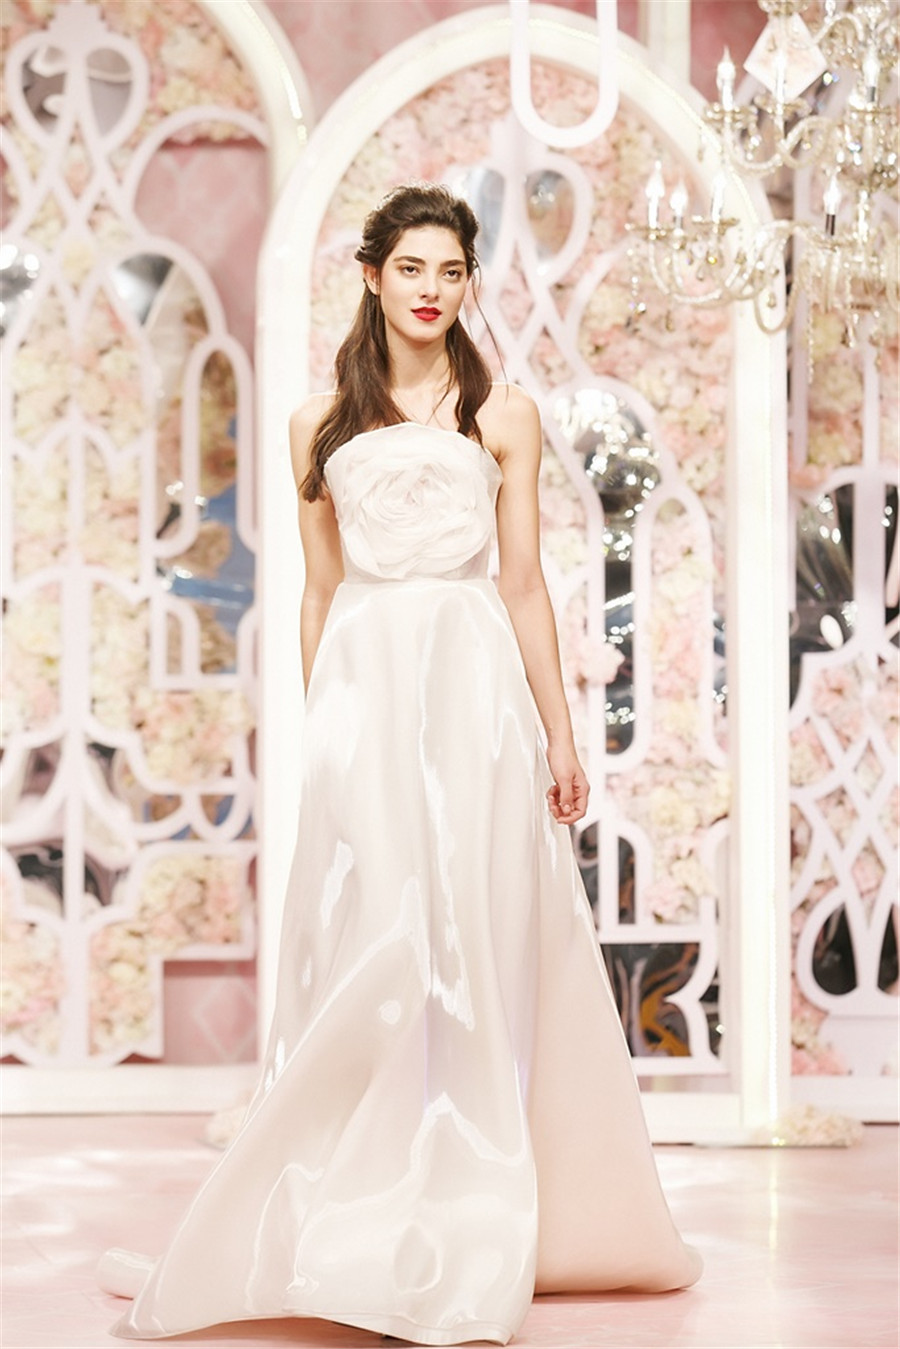 Bridal fashion hits the runway